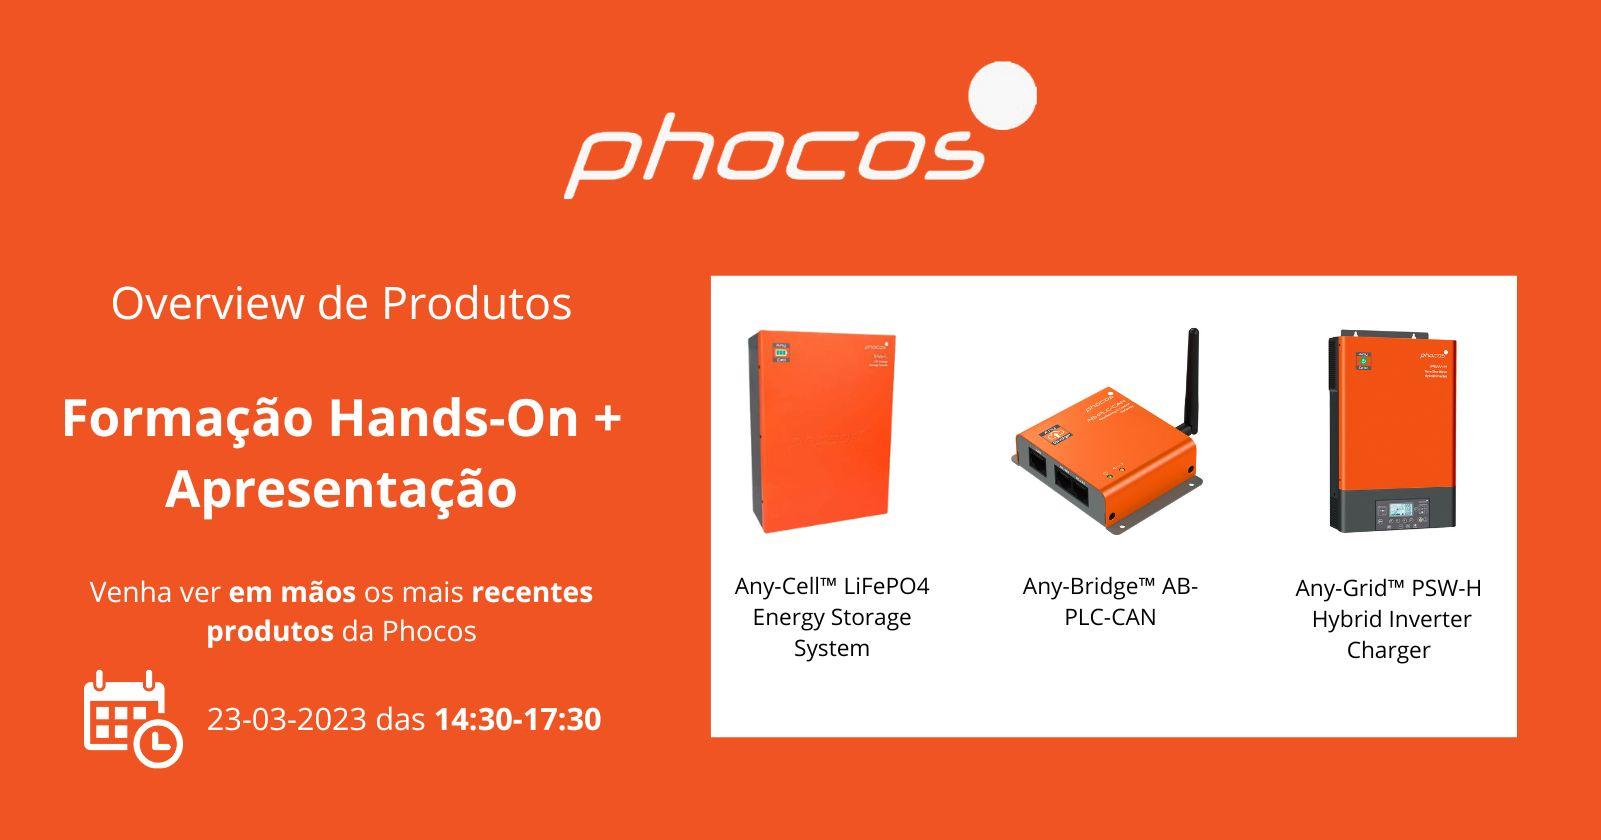 Evento & Formação da Phocos em formato Hands-On!